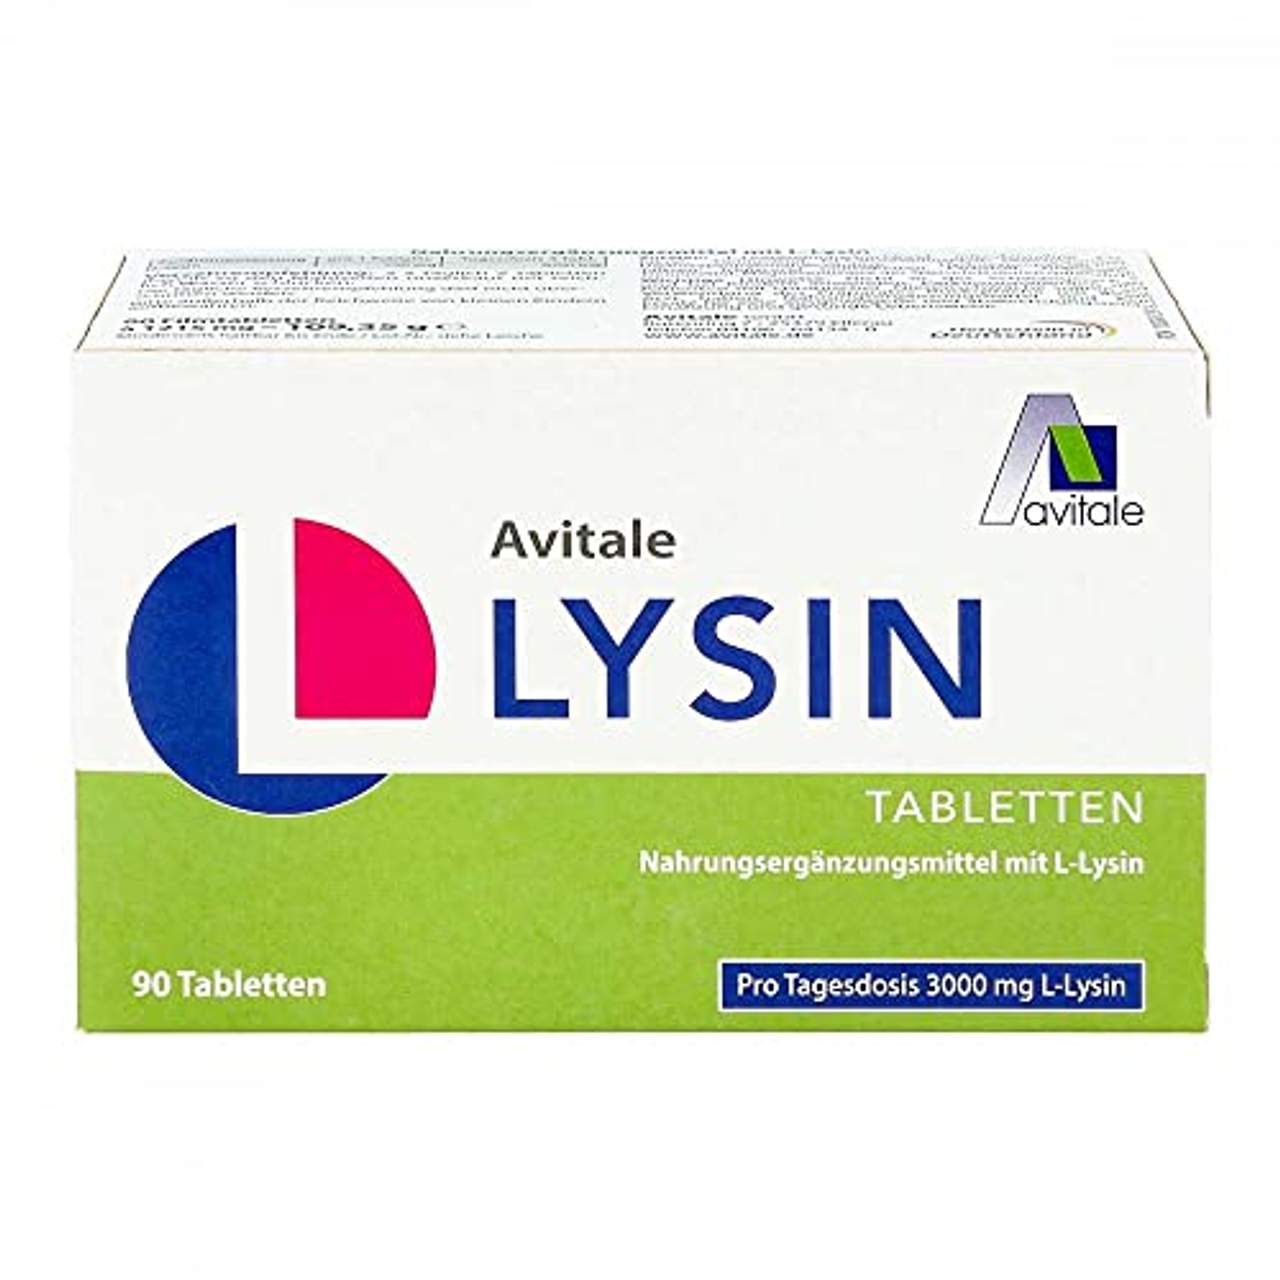 L-Lysin 750 mg Tabletten